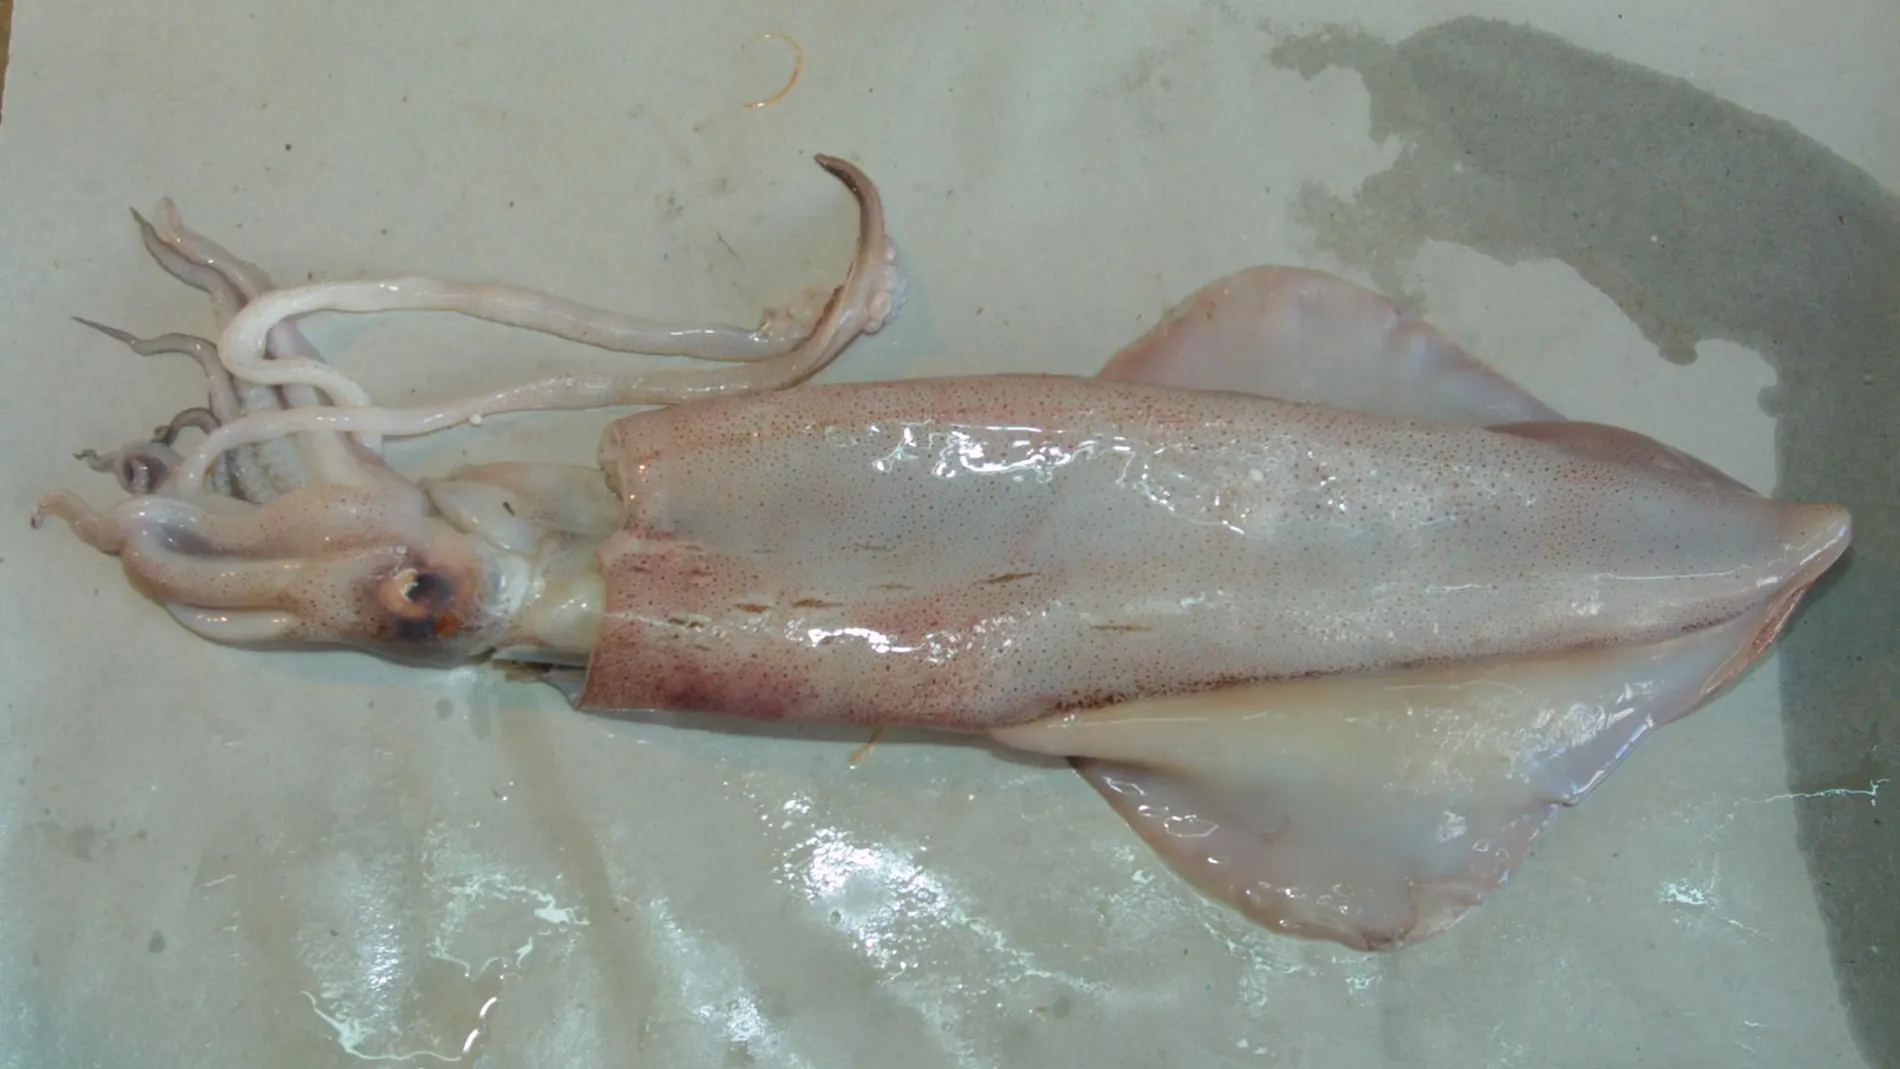 El estudio ha descubierto una sorprendente aplicación de los calamares / C. Pastrano